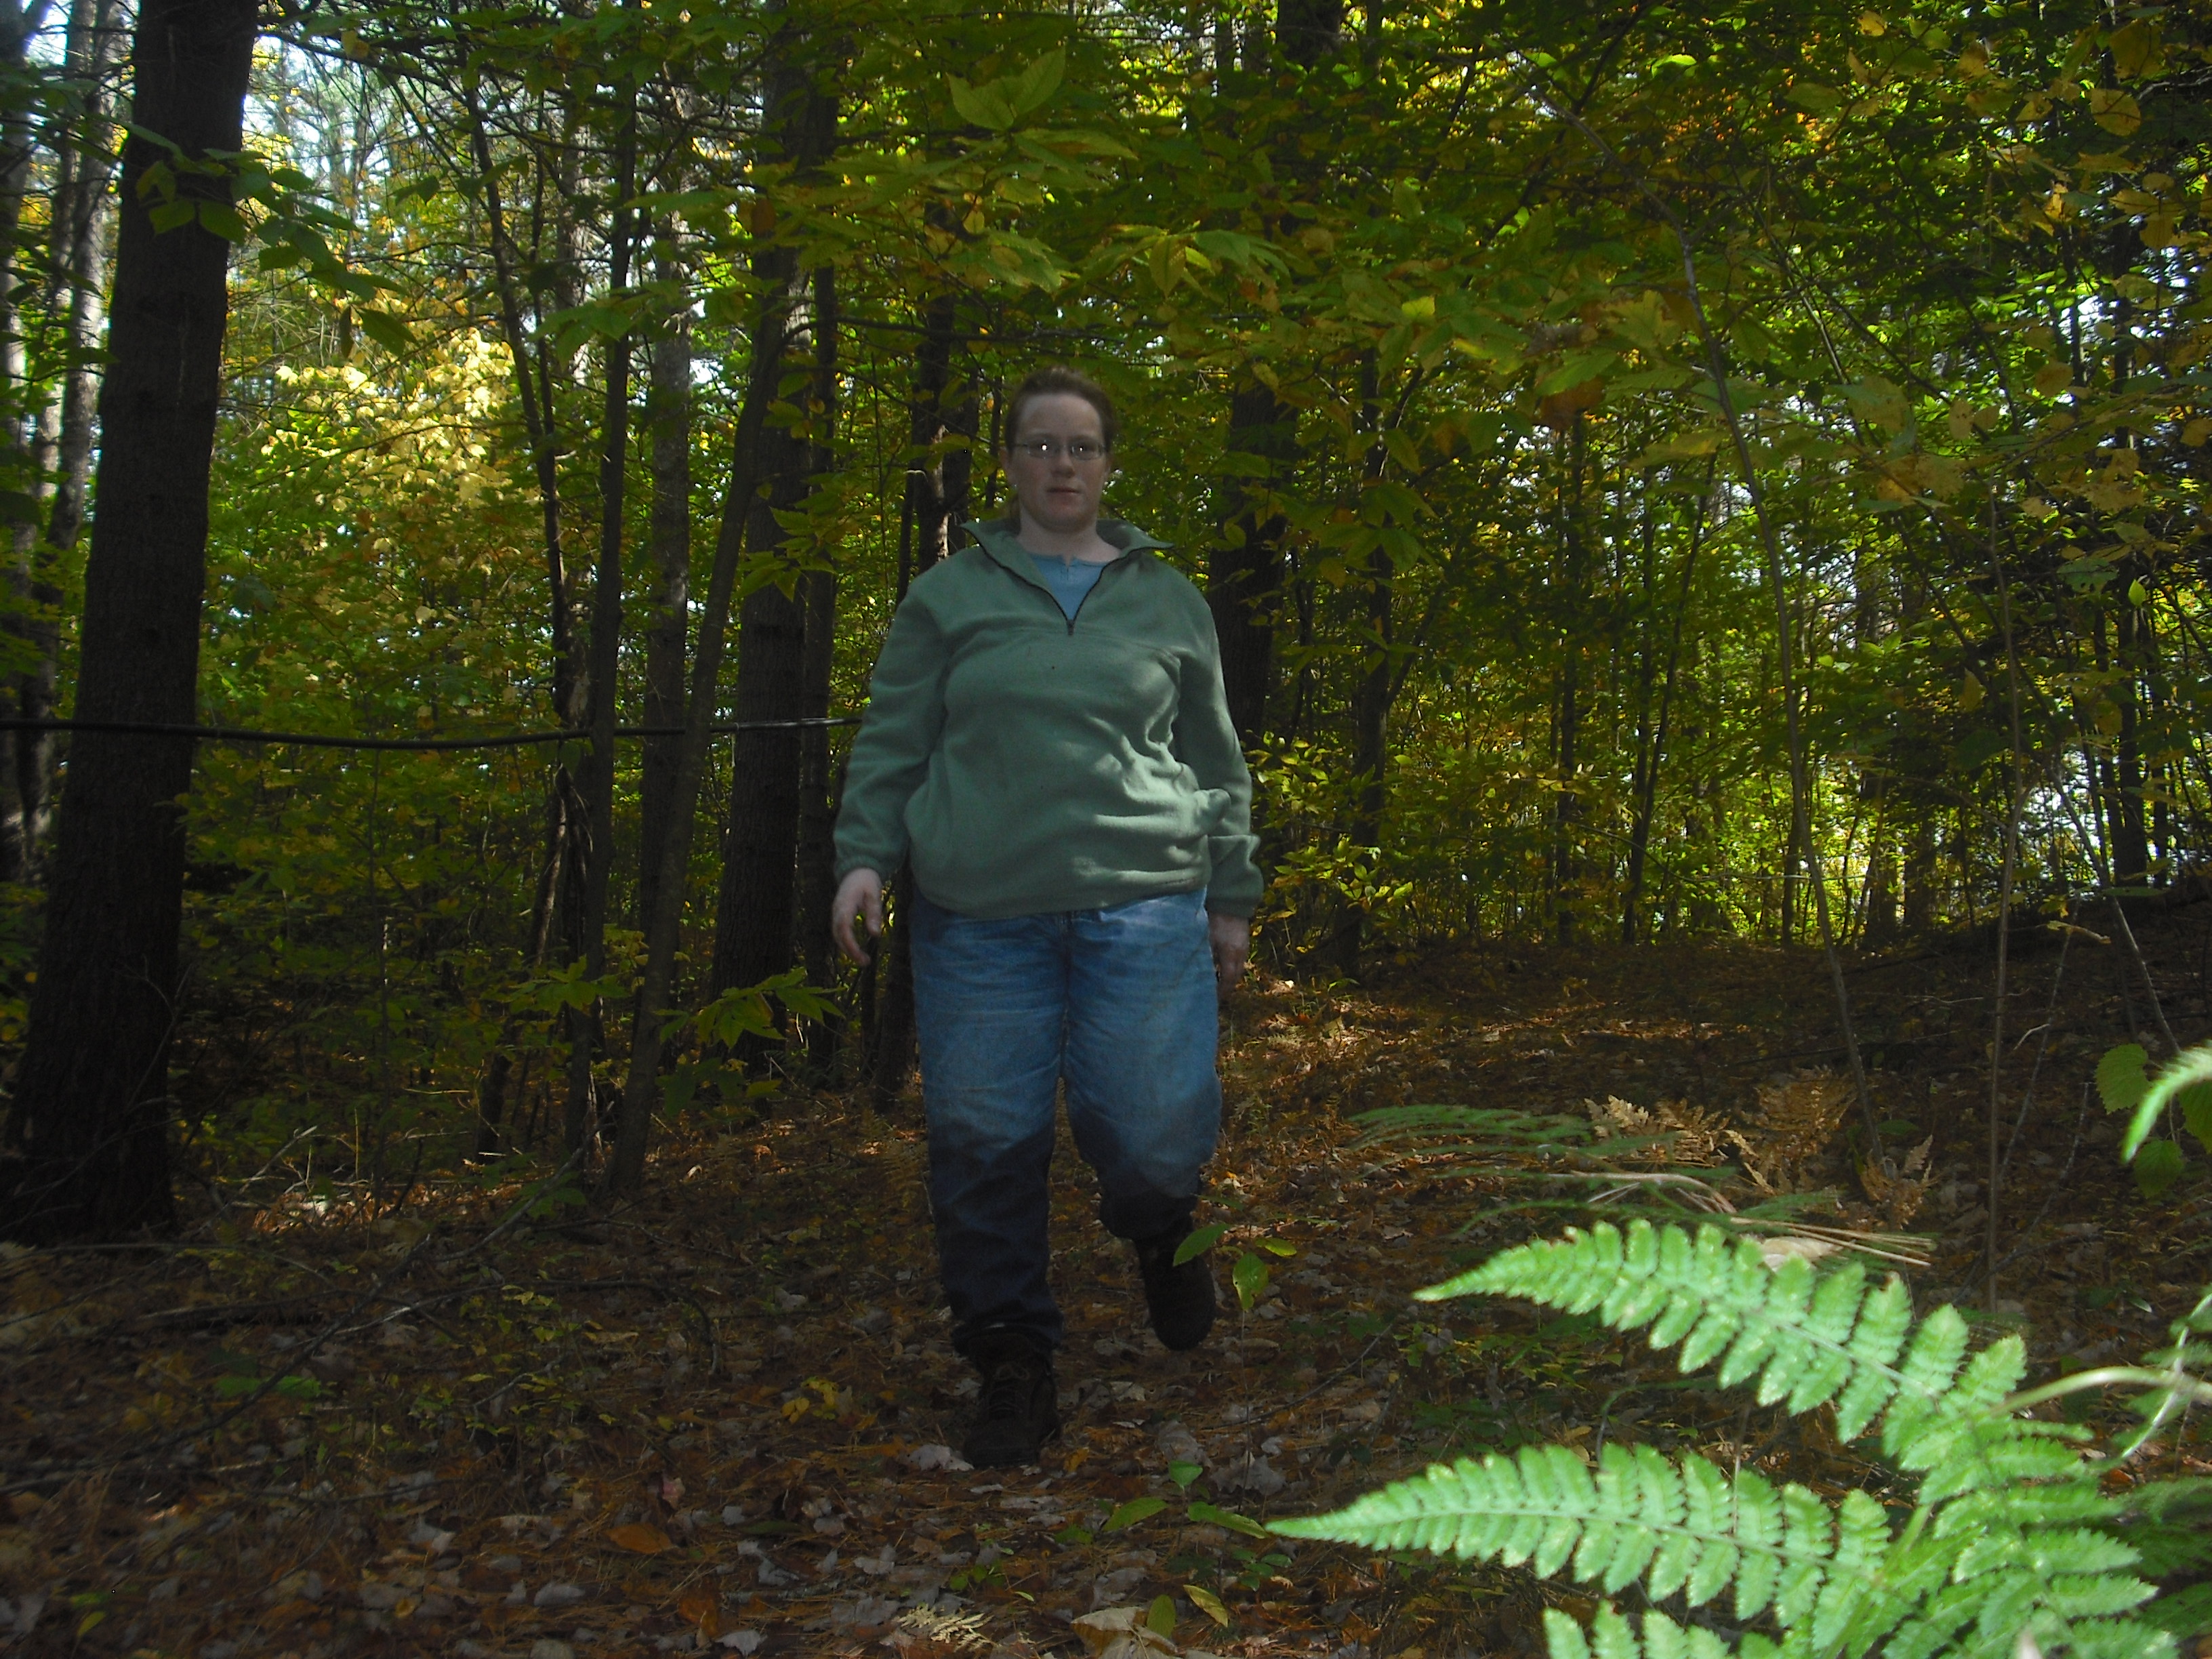 Cedar walking in the woods